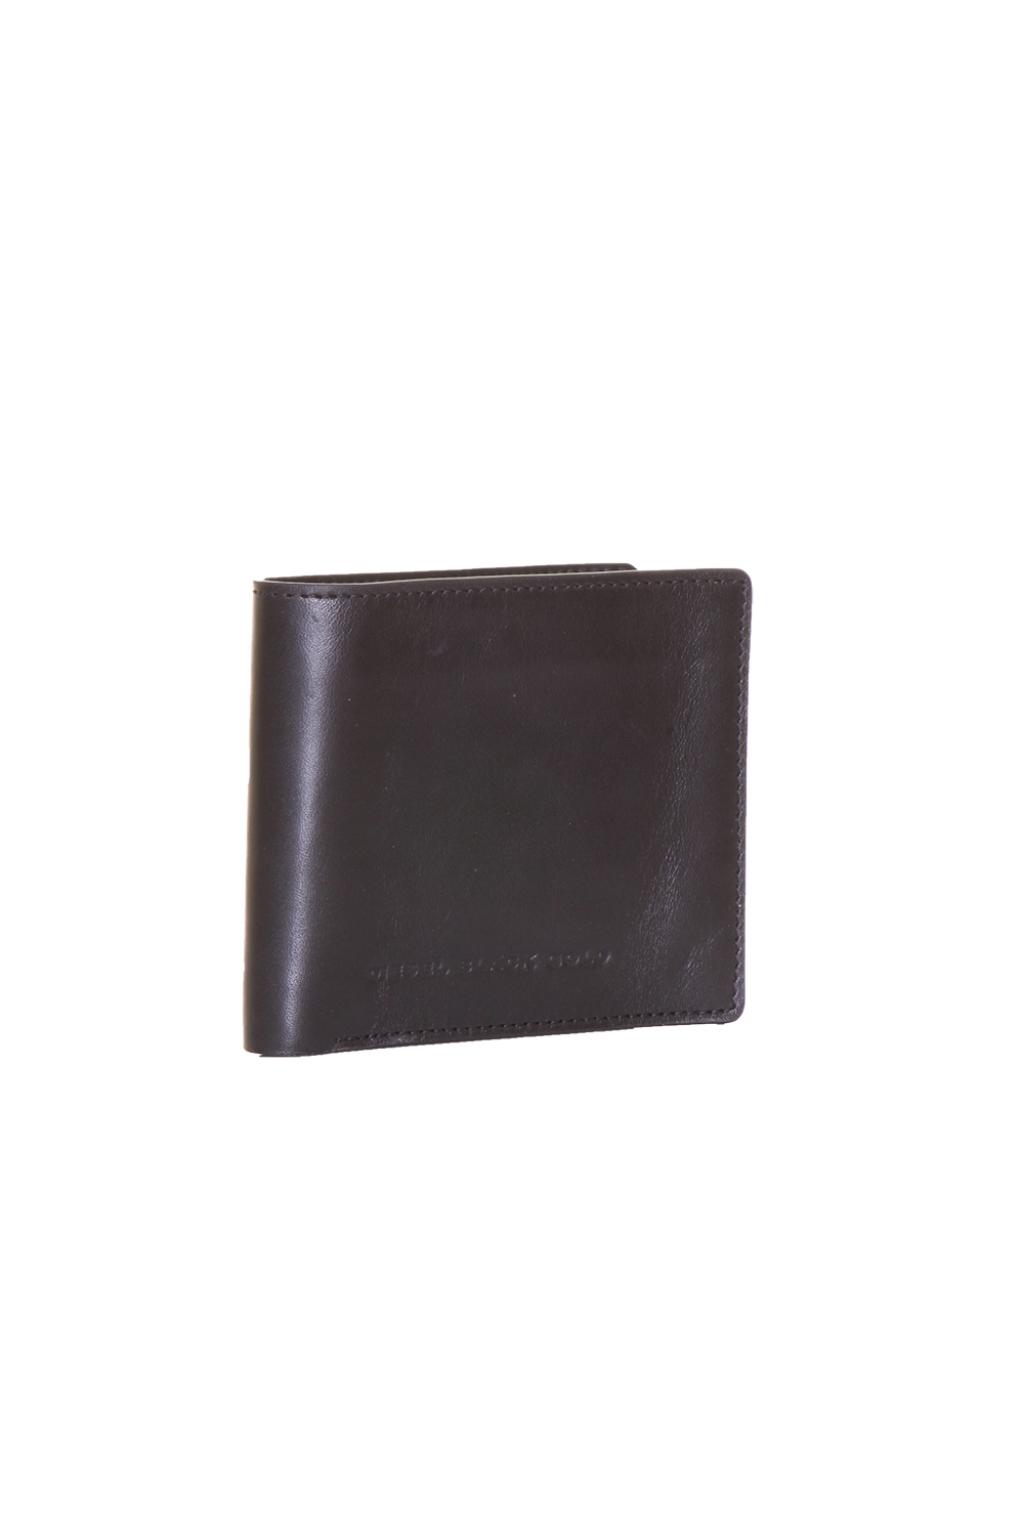 Leather Wallet Diesel Gloomy Gold - IetpShops US